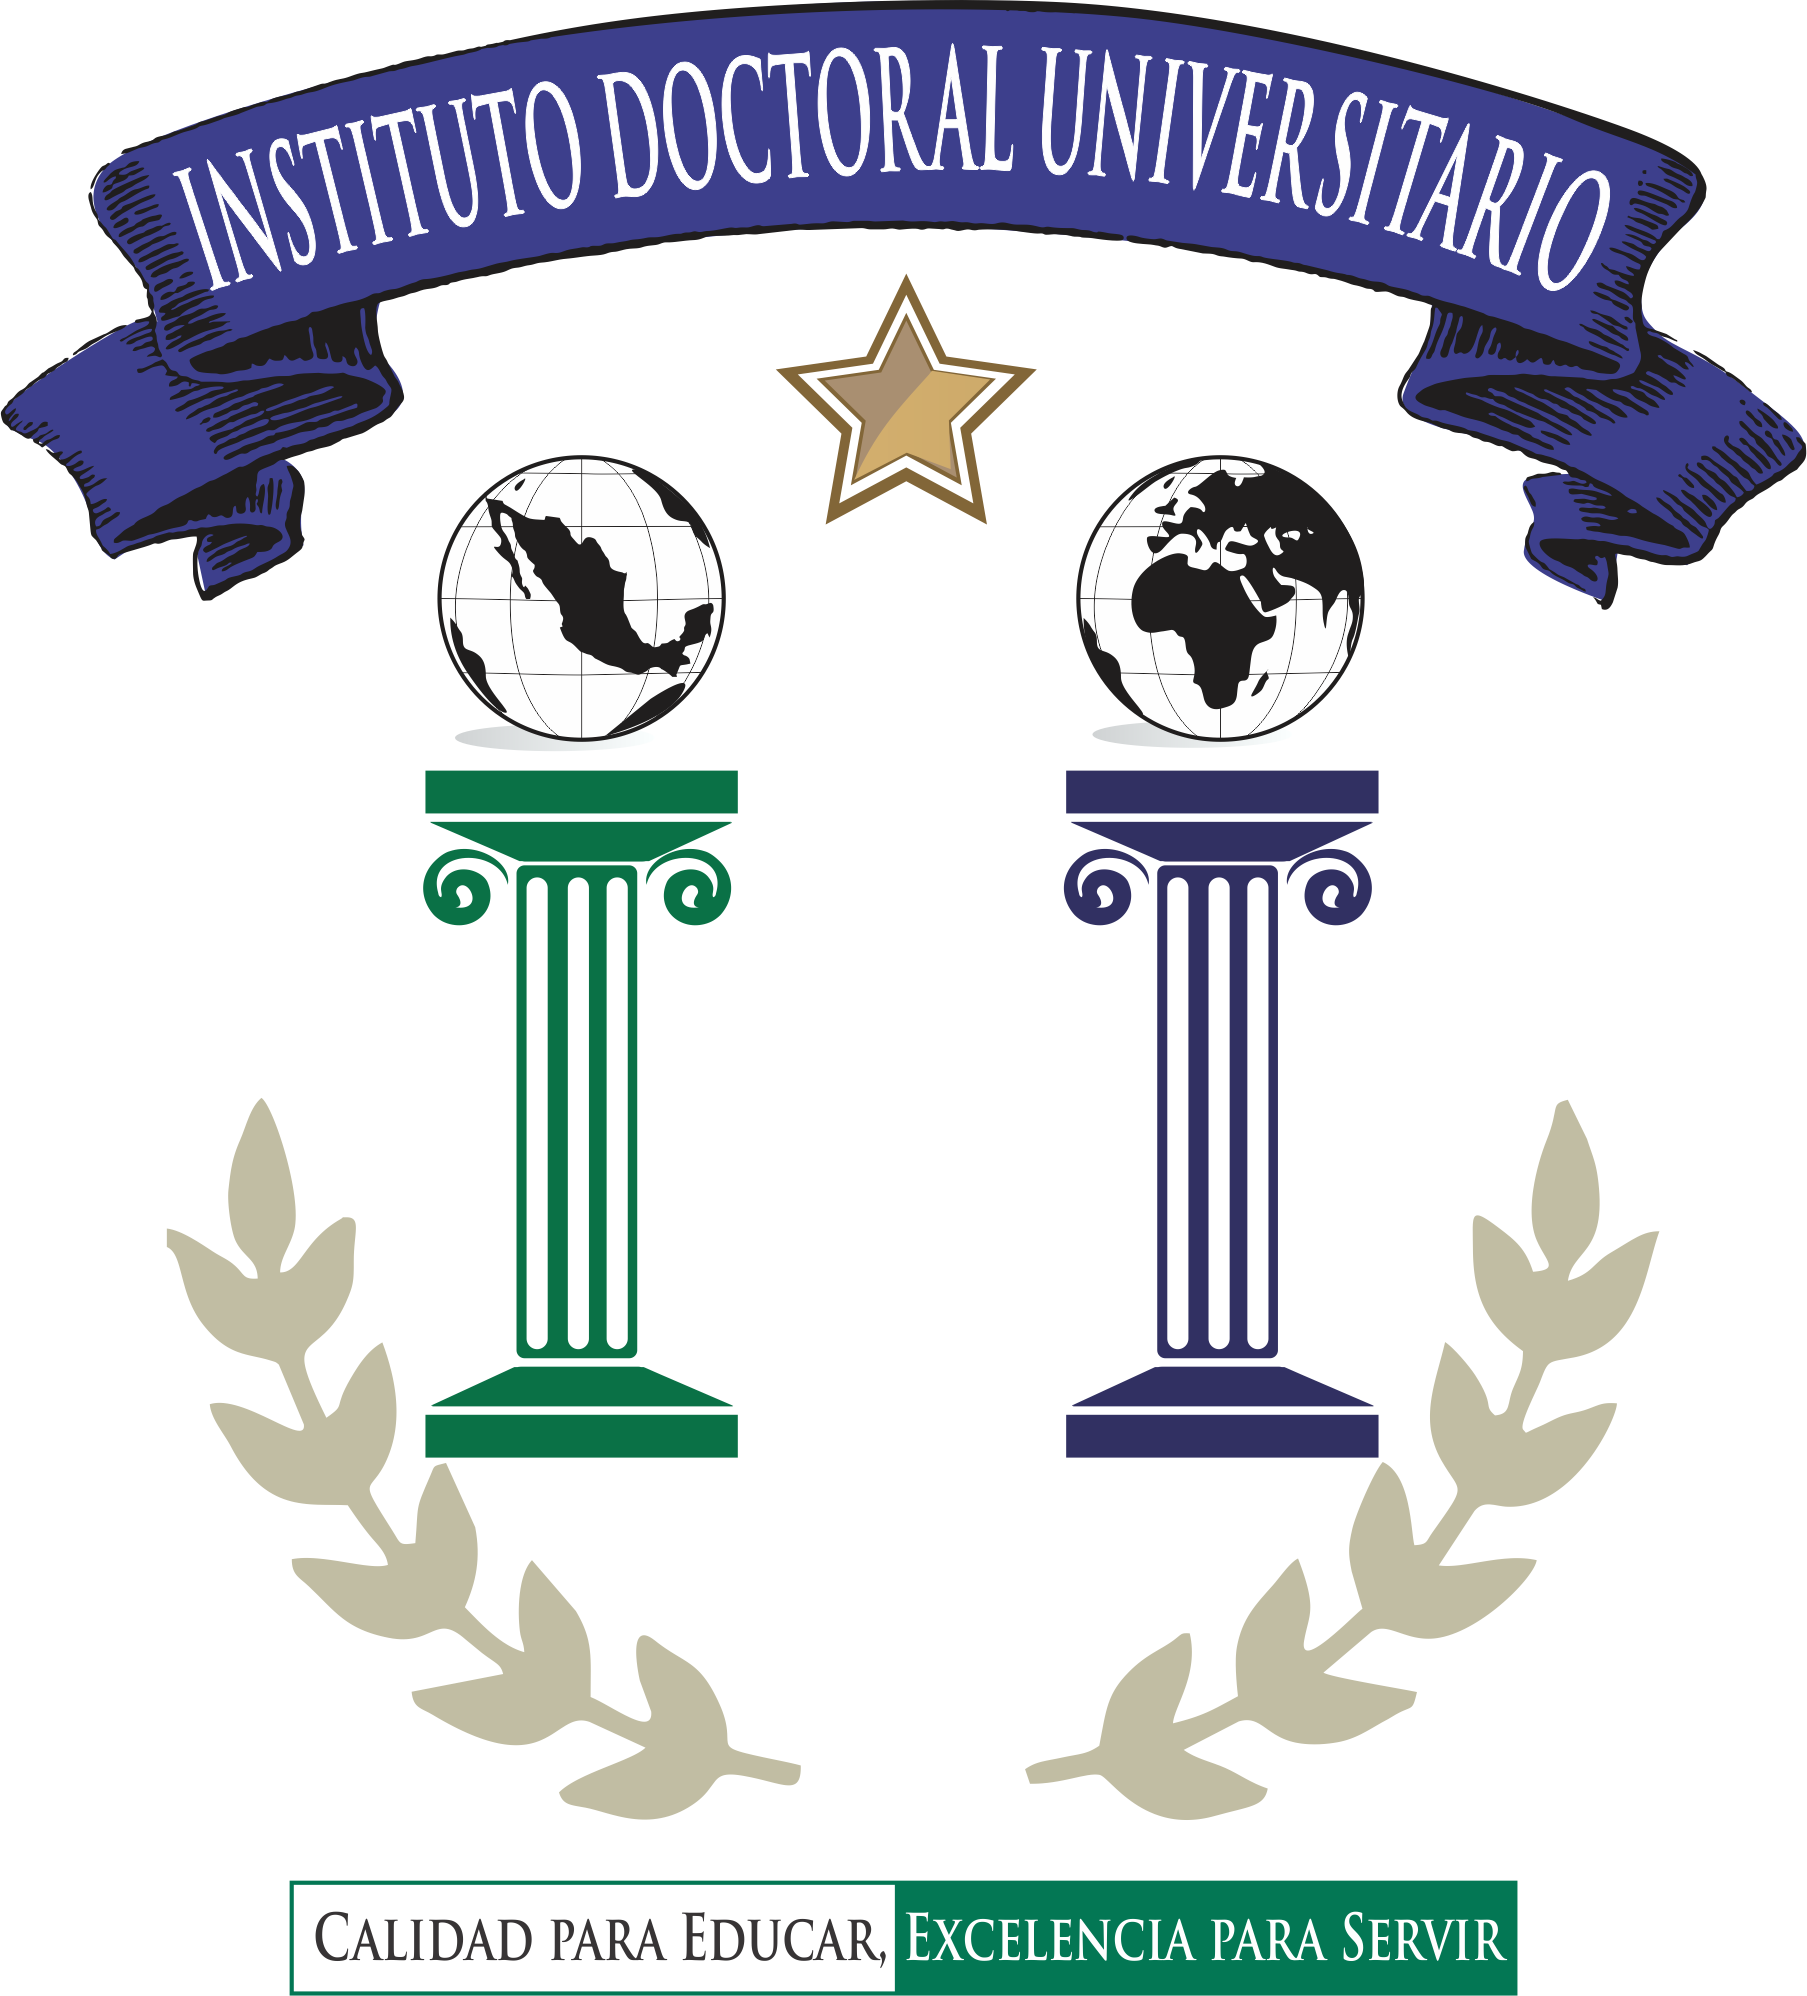 Instituto Doctoral Universitario